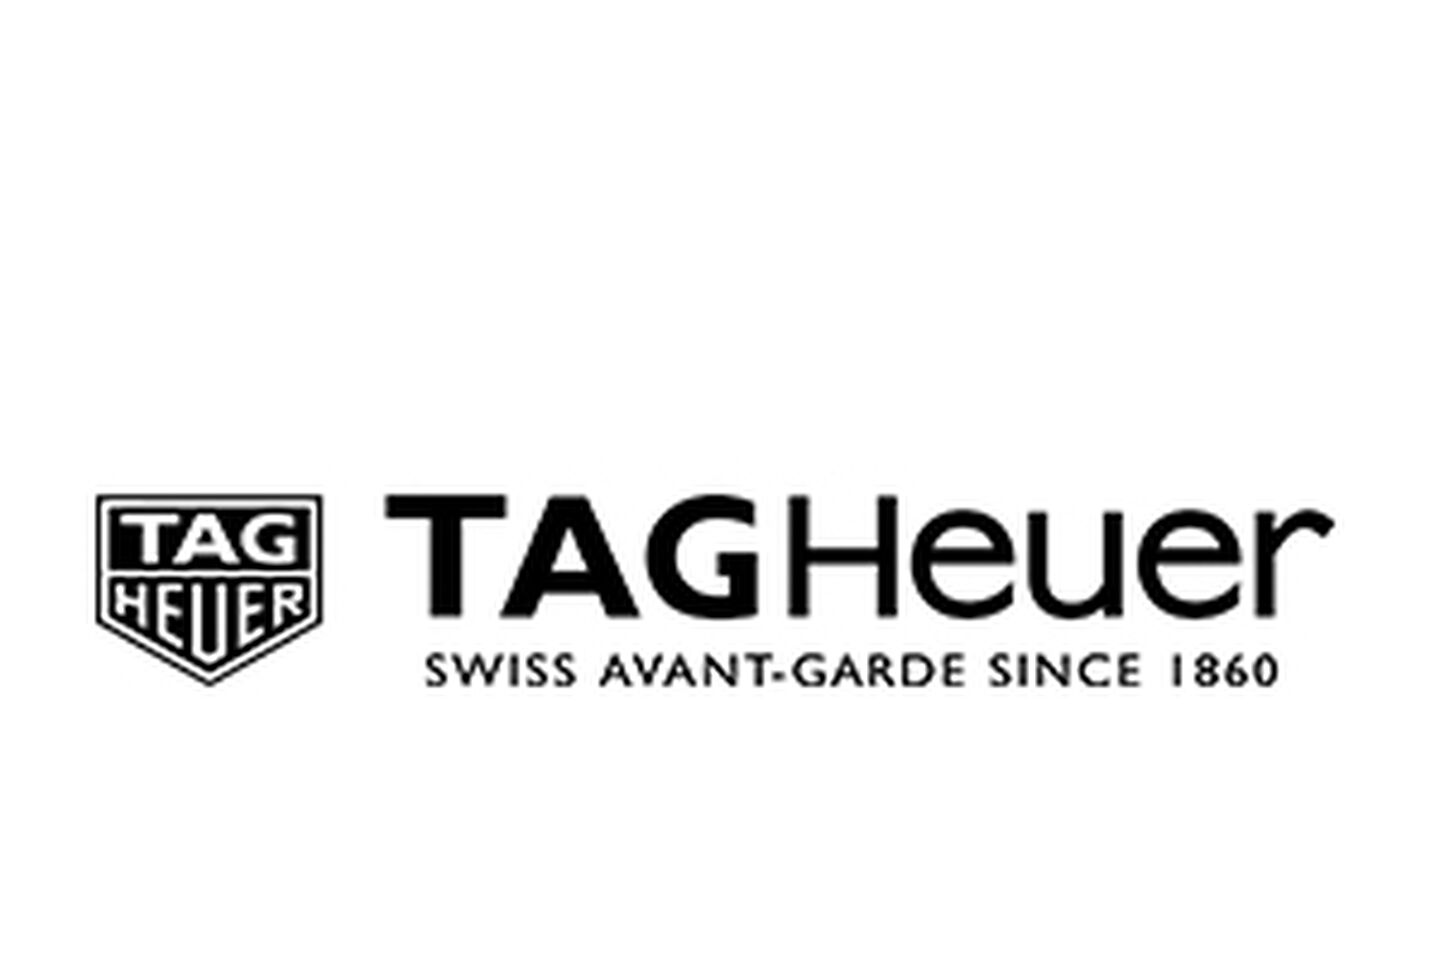 Tag Heuer Logo "Swiss avant-garde since 1860"